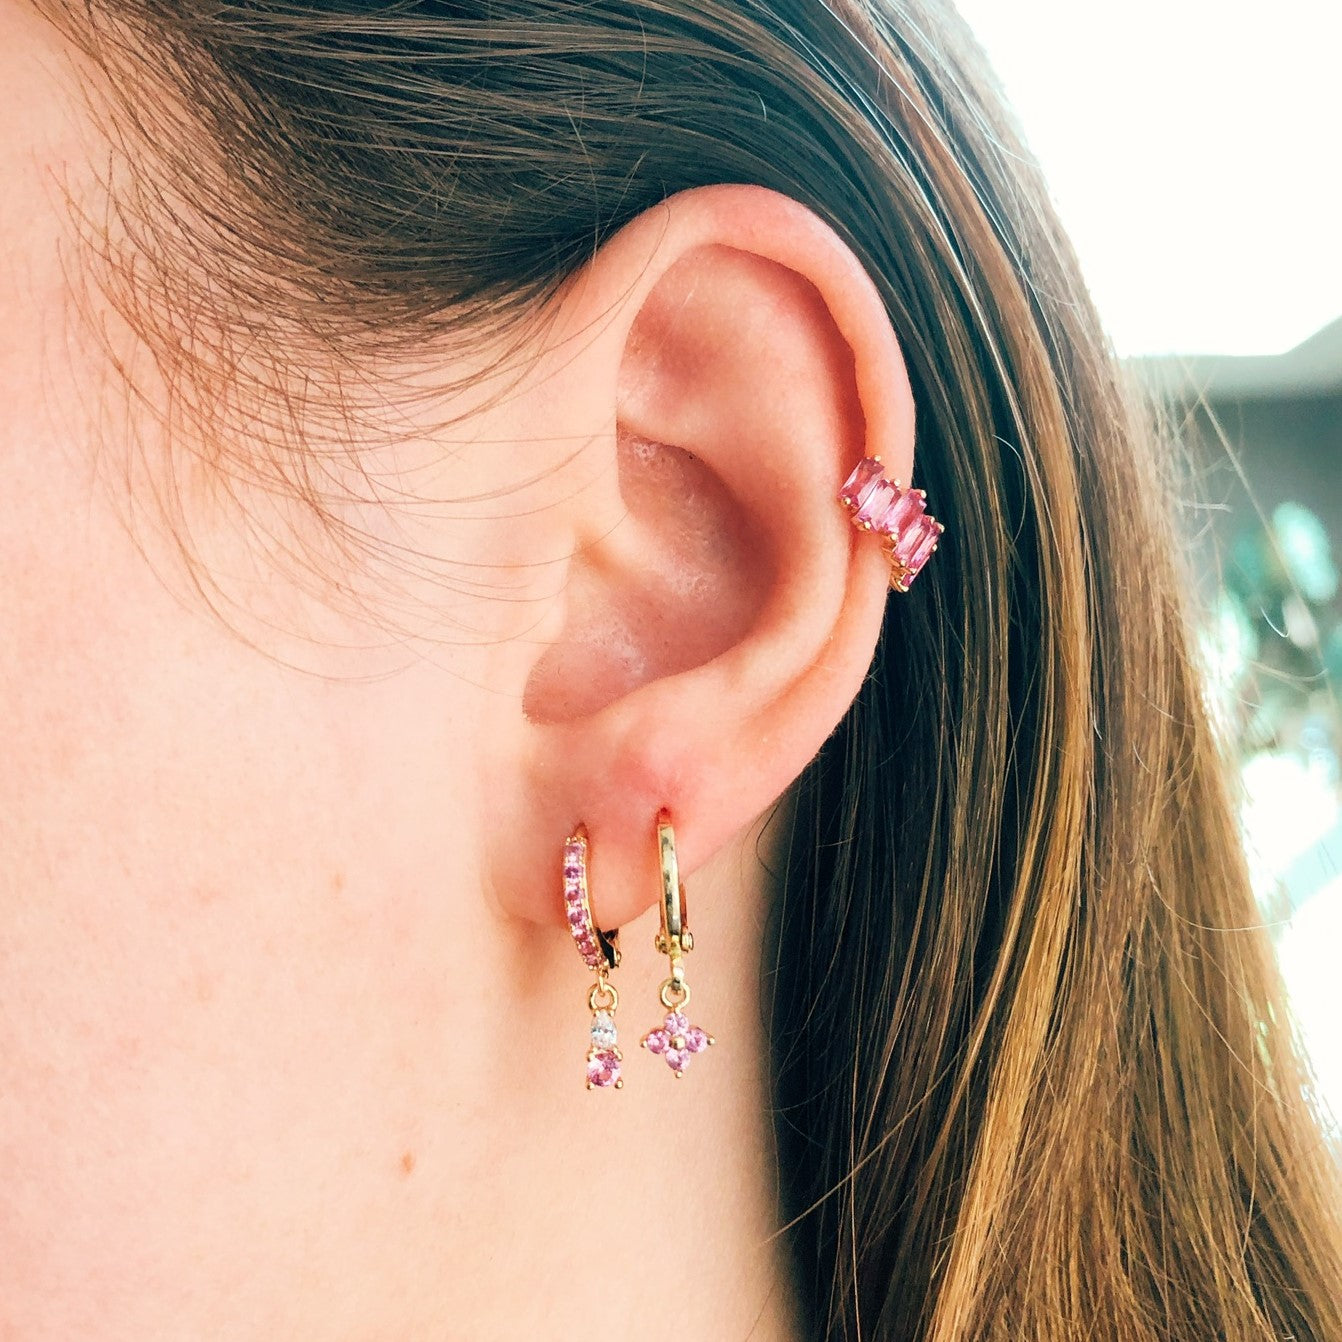 Earrings pixie pink